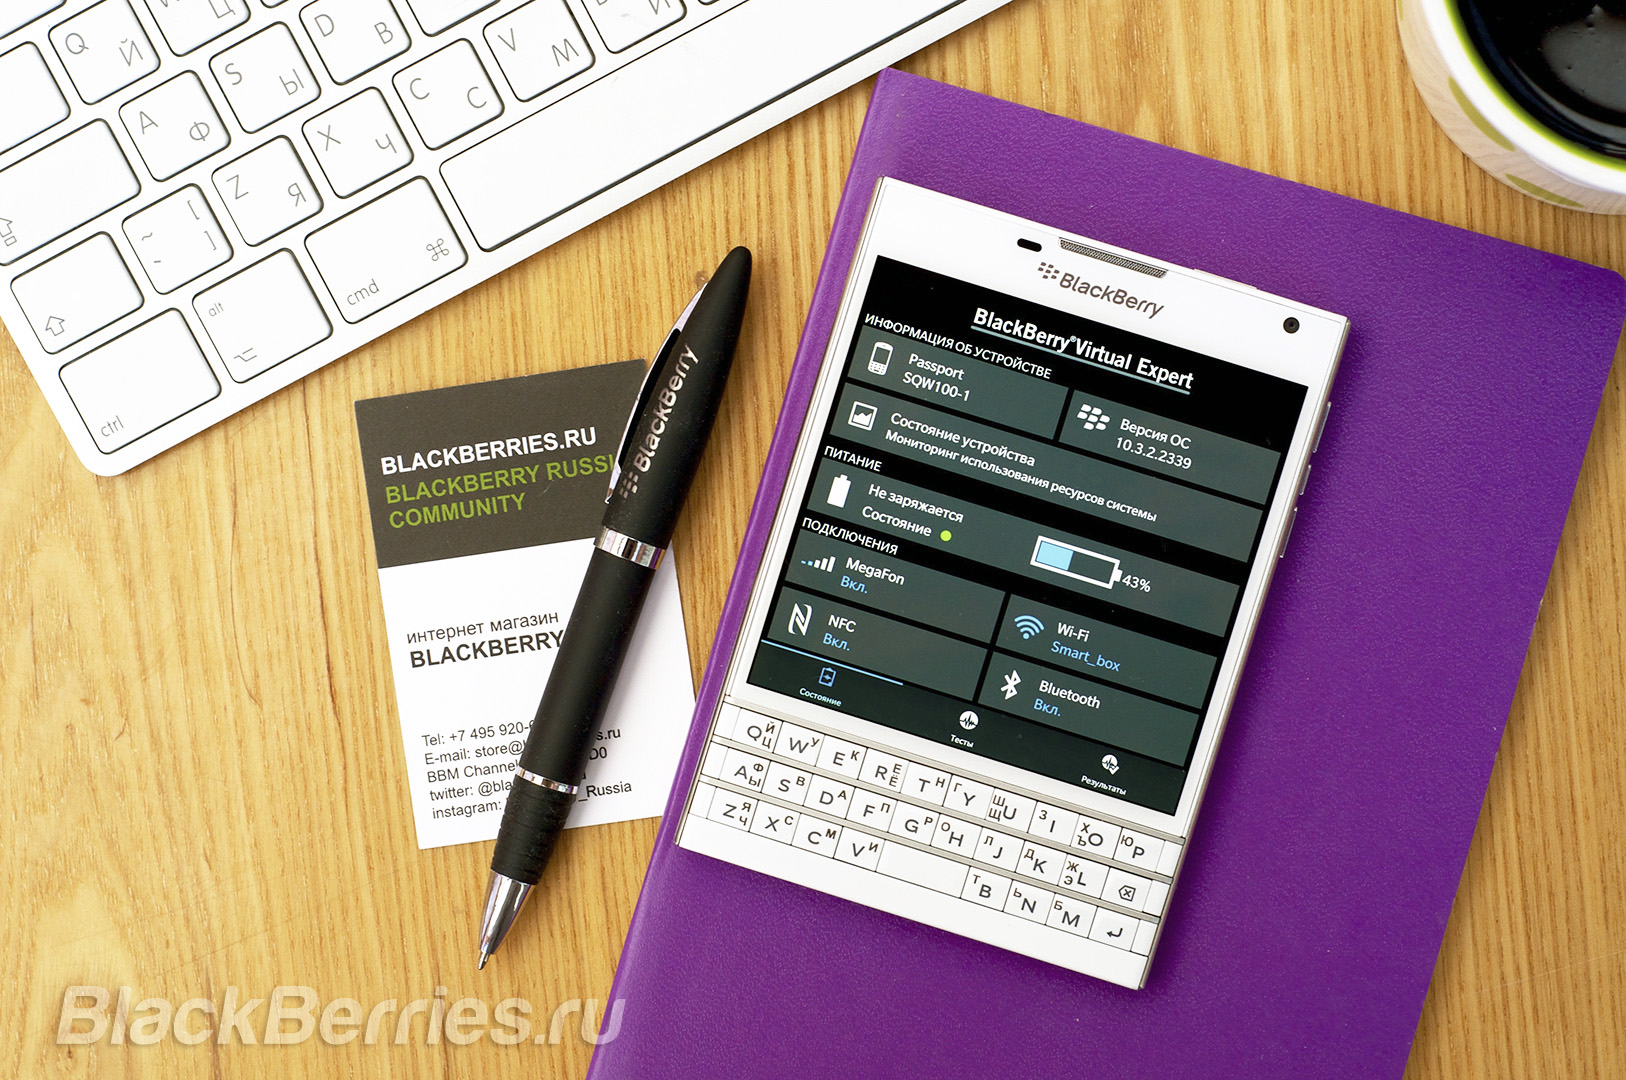 BlackBerry-Passport-Apps-31-07-05